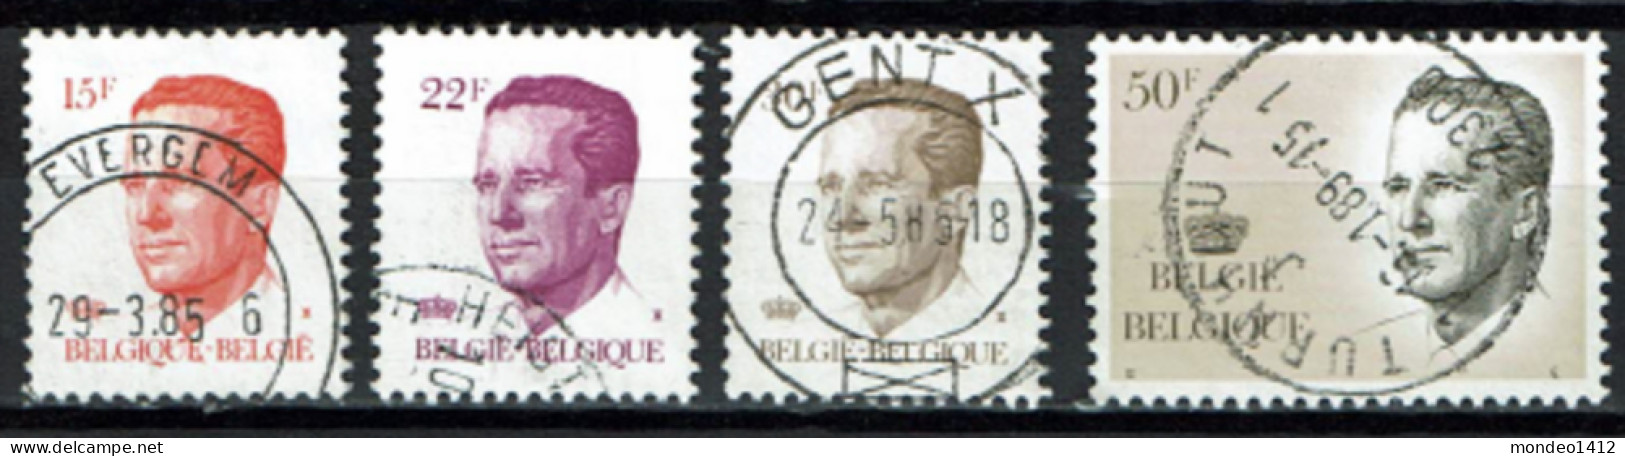 België 1984 OBP 2124/2127 - Série Courante Baudouin "Velghe" - Oblitérés